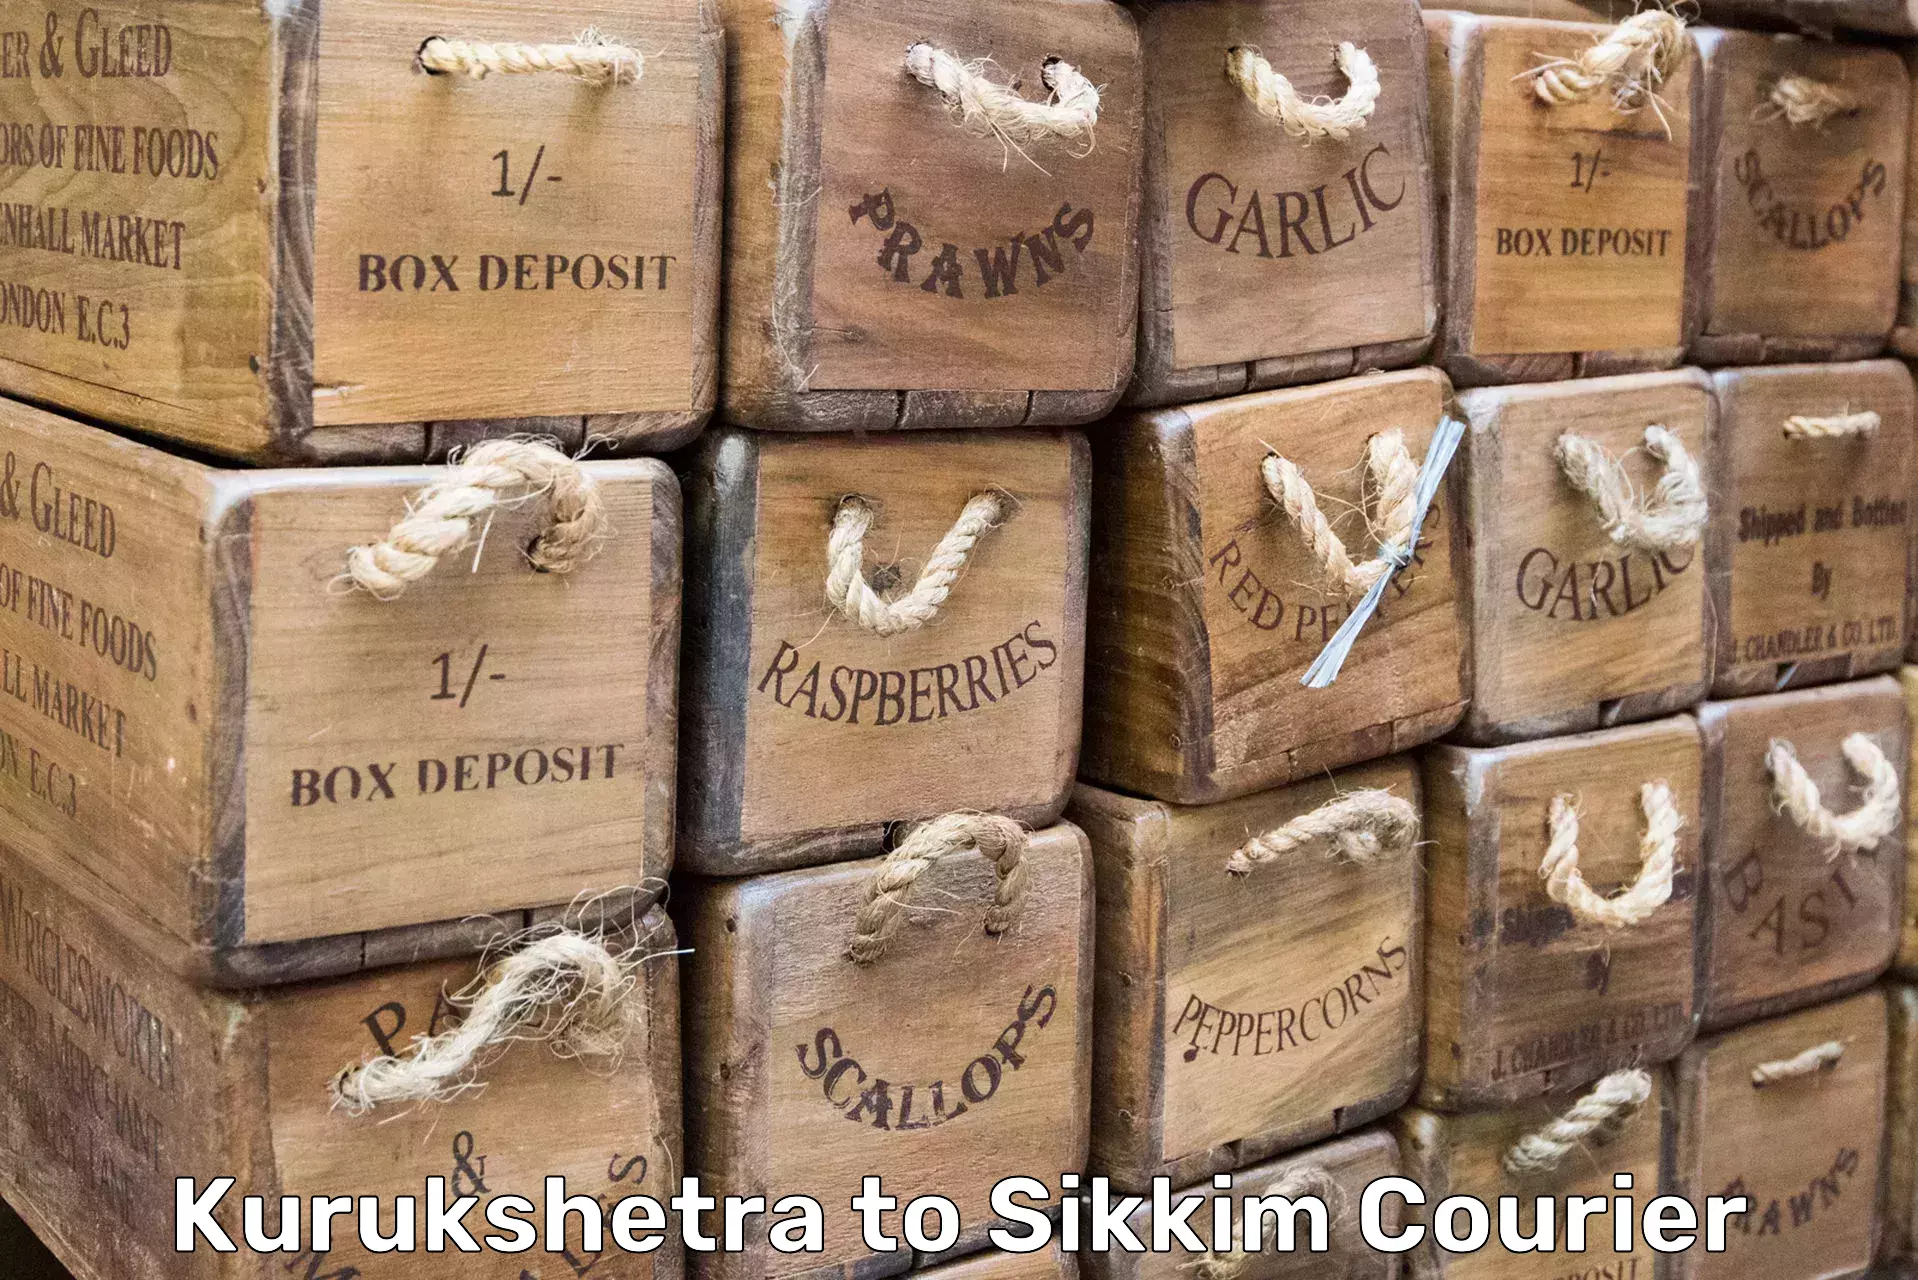 Furniture moving experts Kurukshetra to East Sikkim